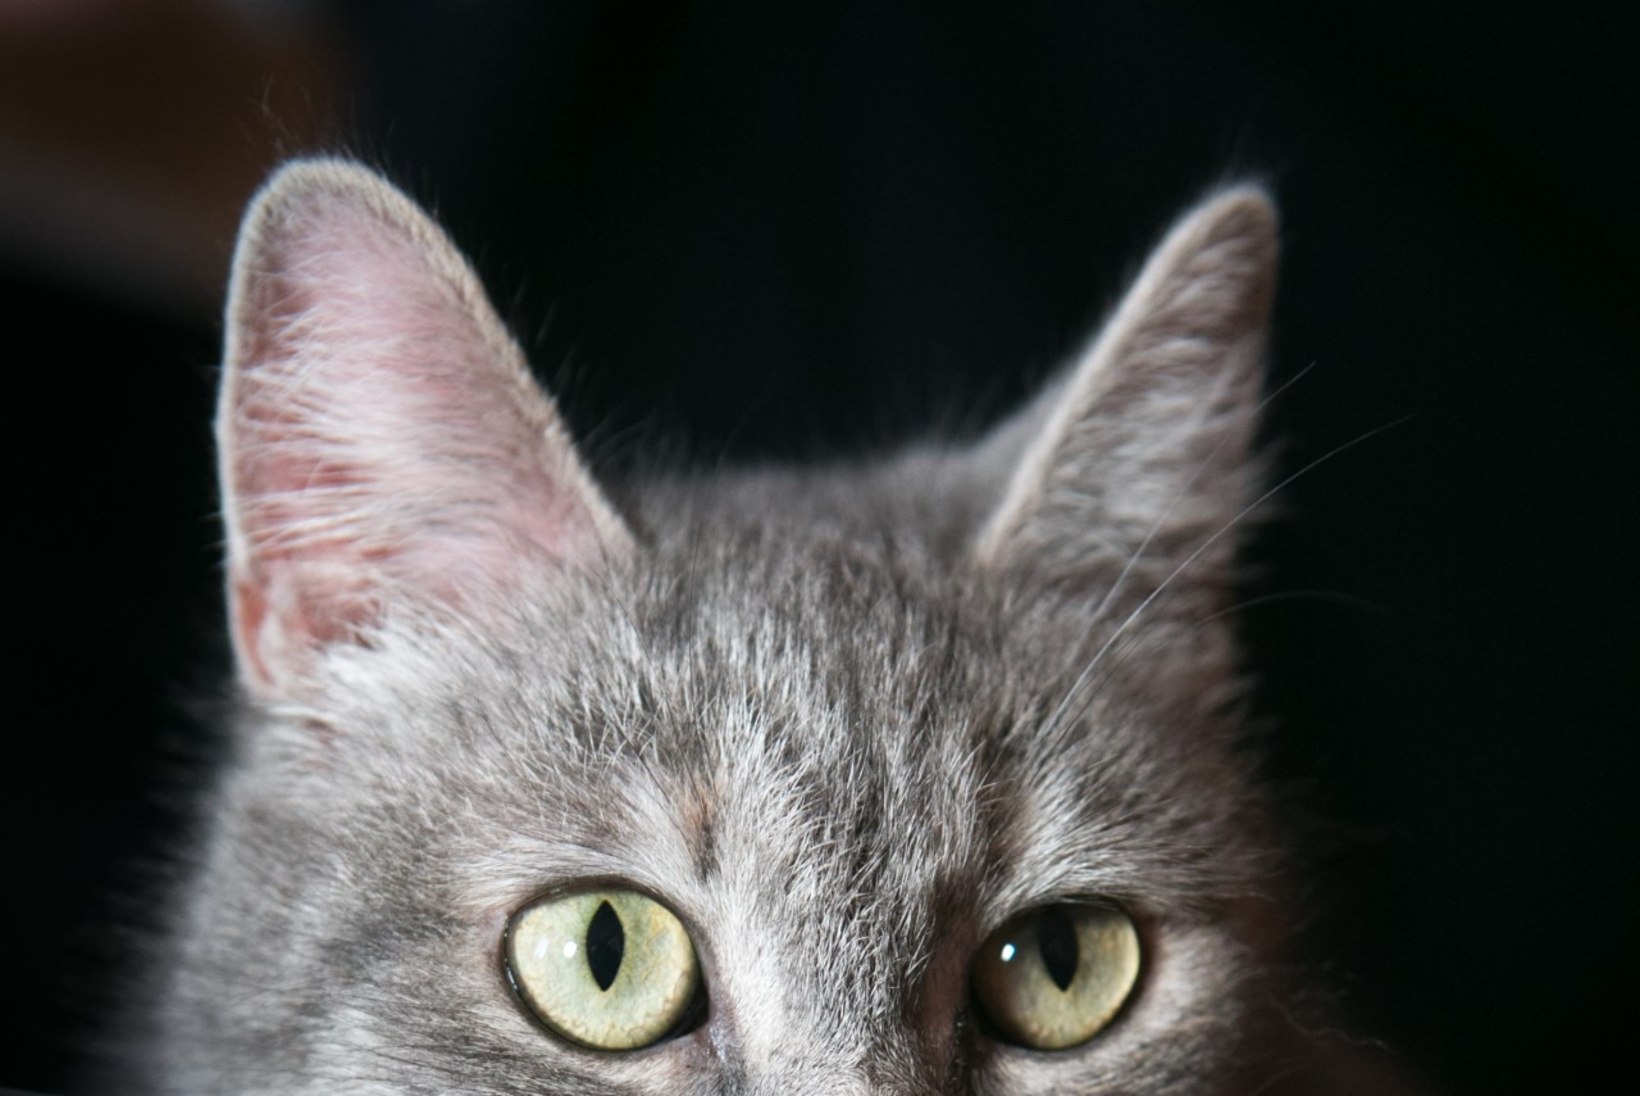 29aastane Missan võib olla maailma vanim kass